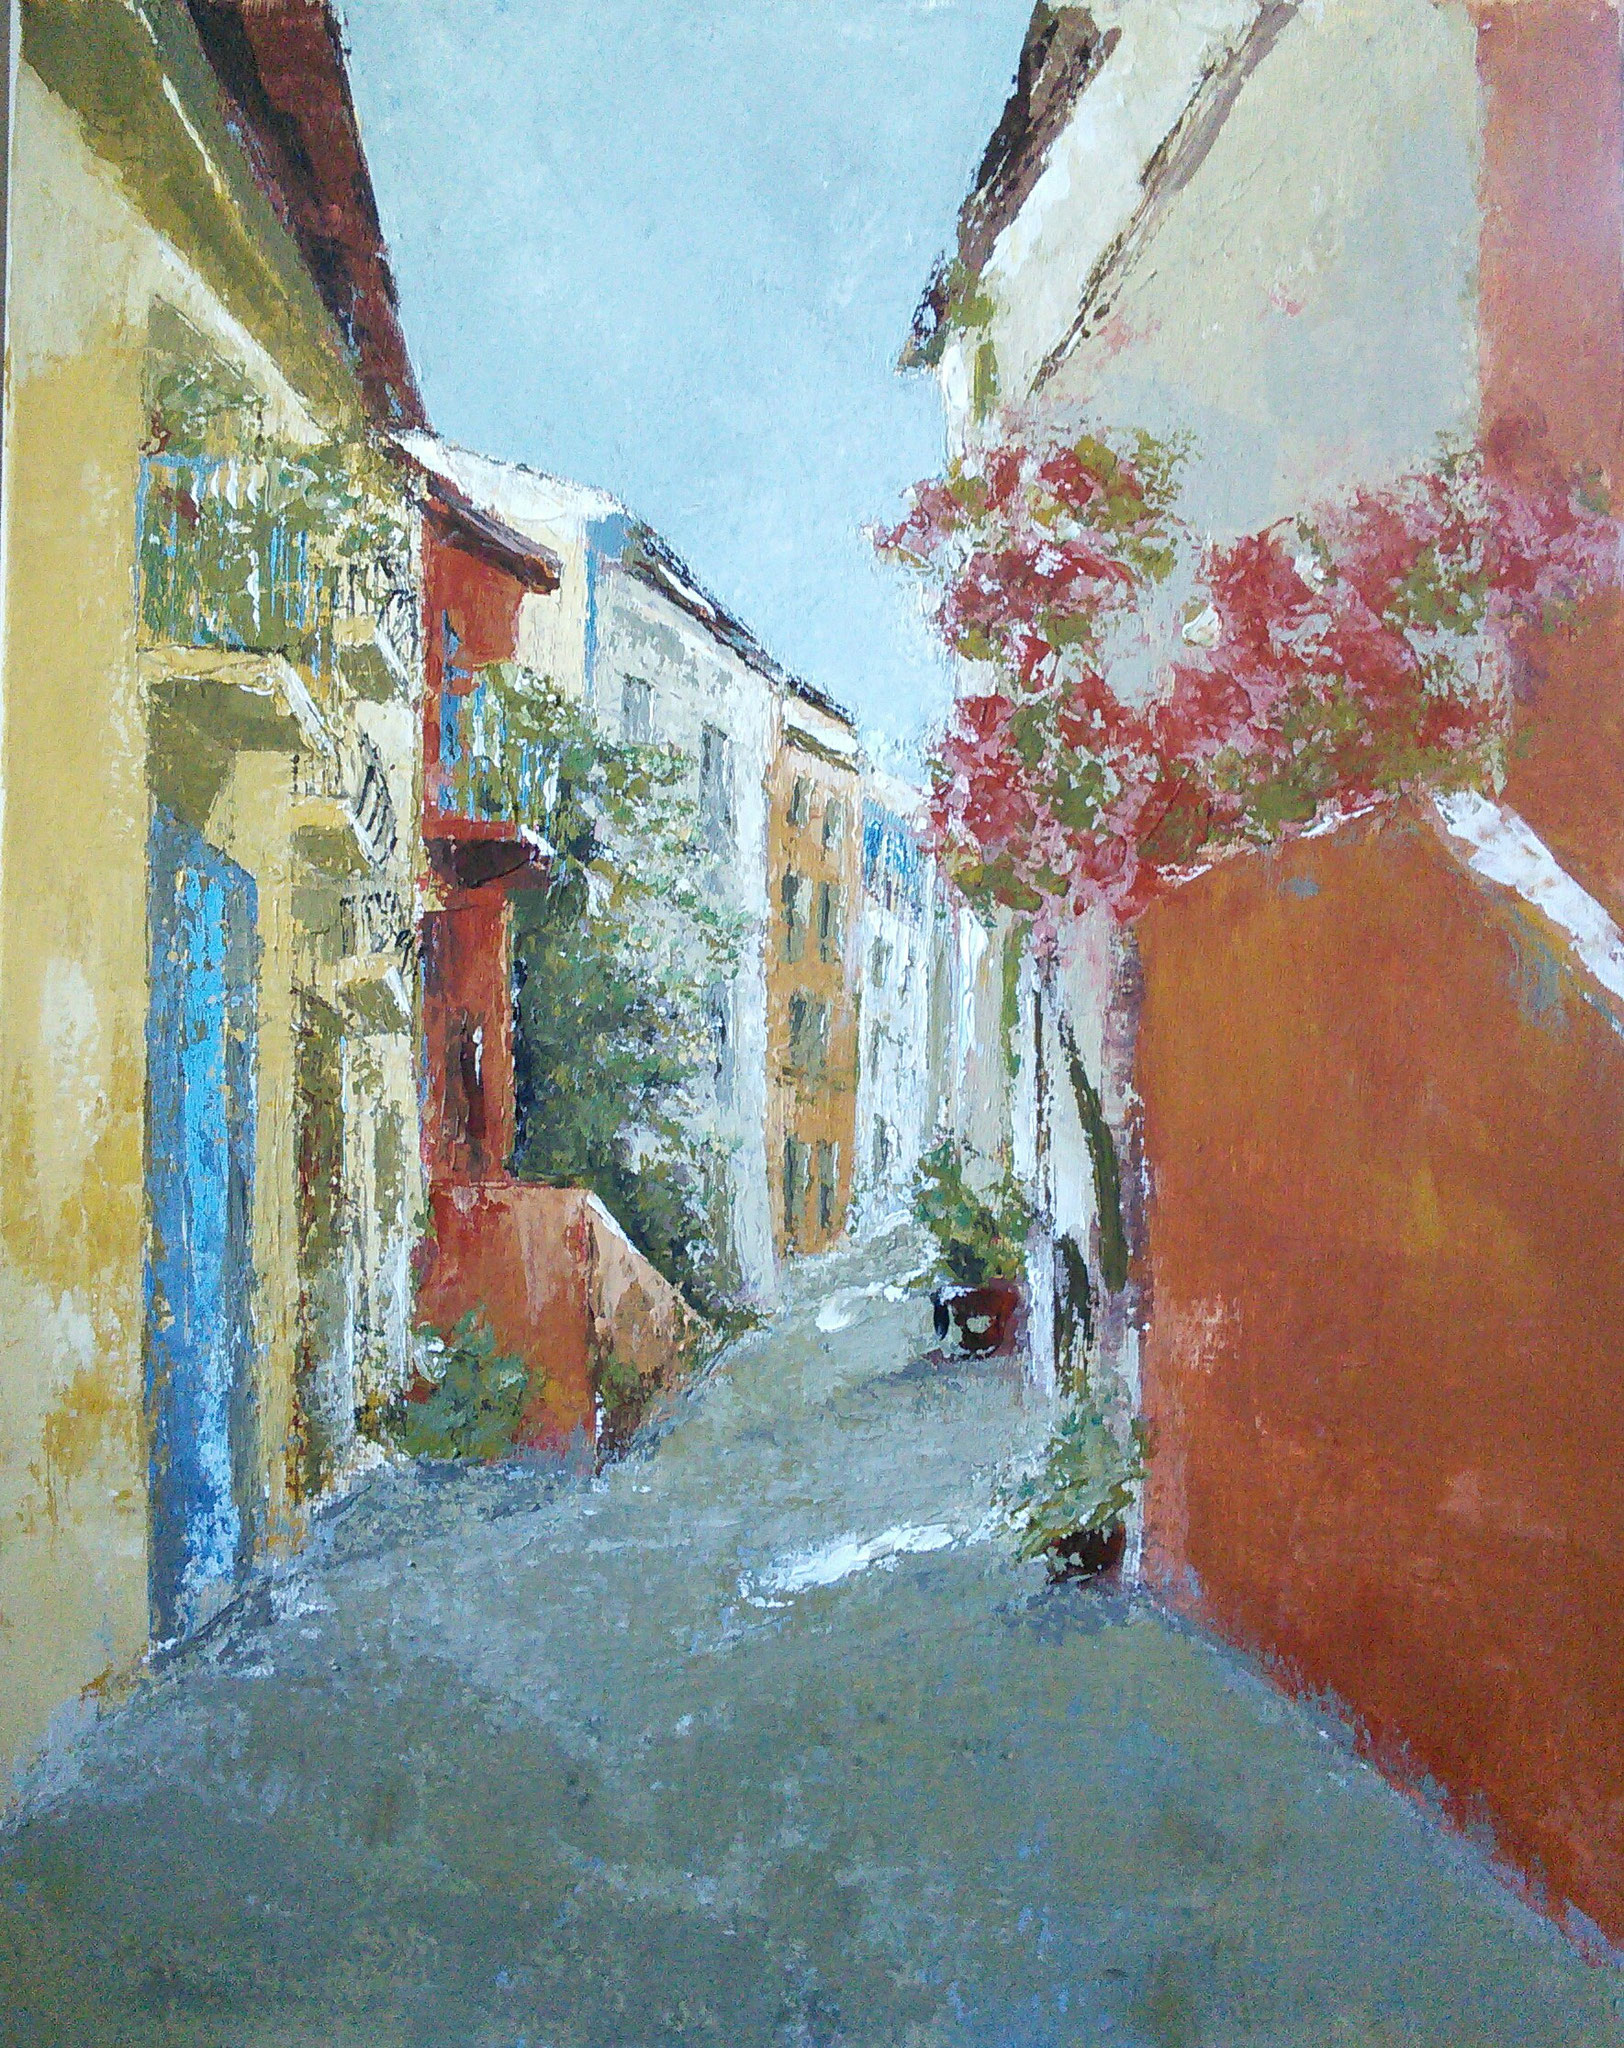 Lumière sur Collioure, acrylique sur toile, 45x55, avril 2021